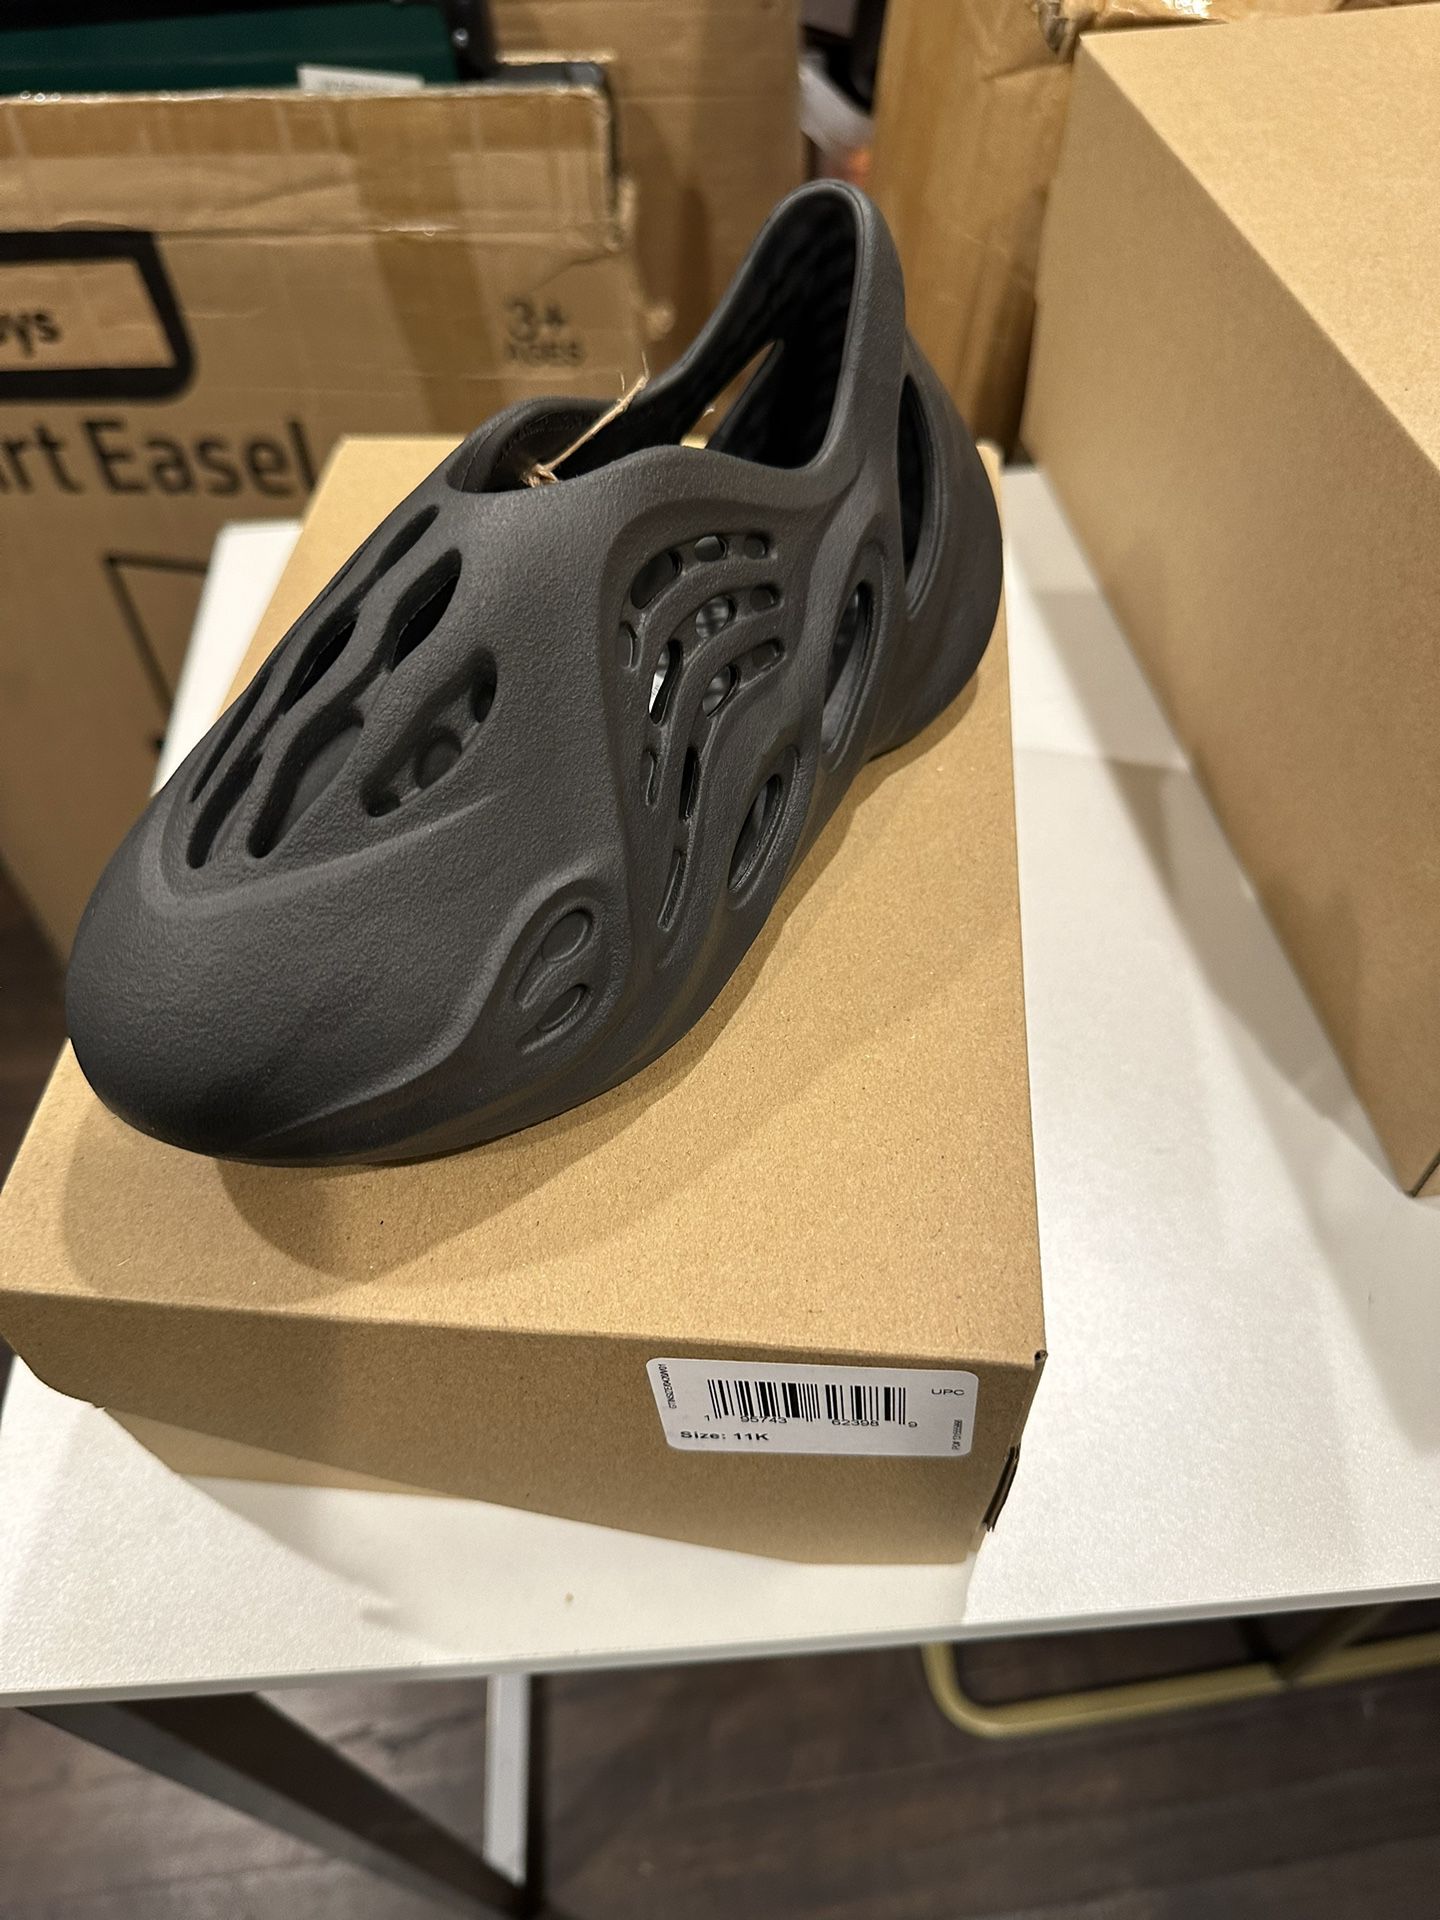 Adidas Yzy Foam Runner Onyx